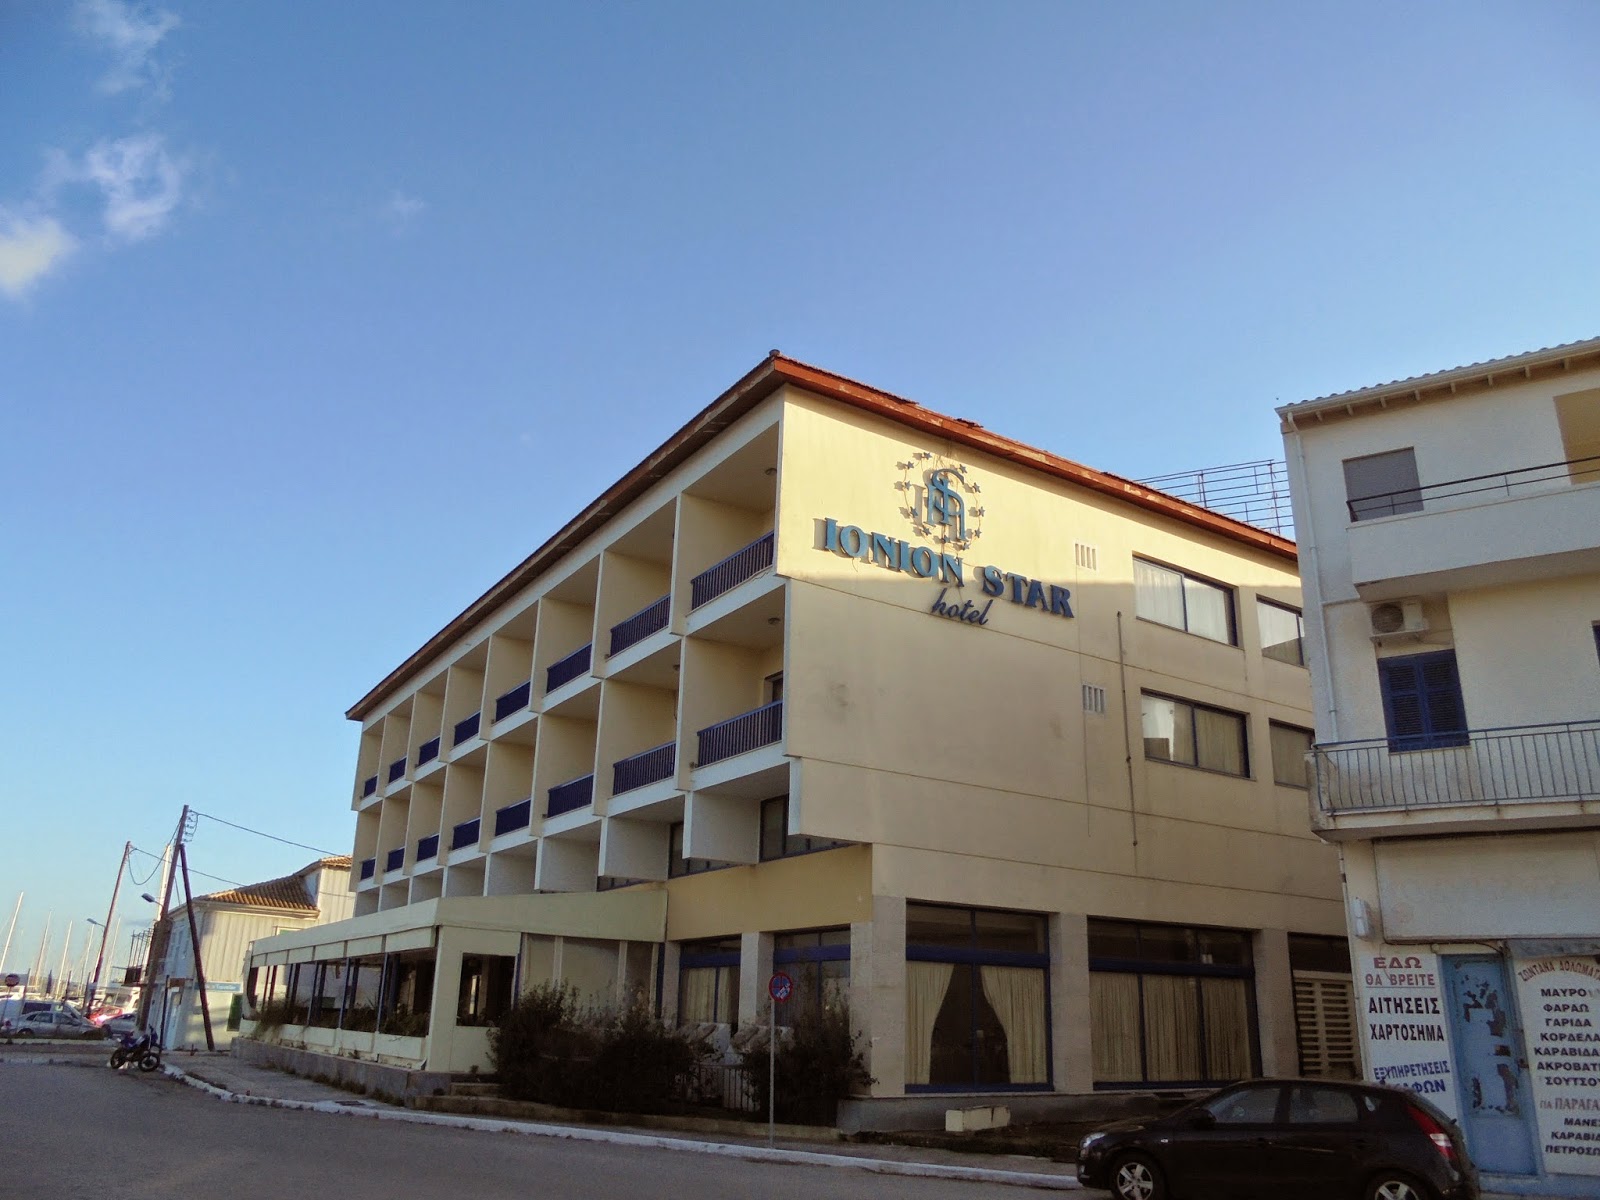 το Ξενοδοχείο Ionion Star στη Λευκάδα